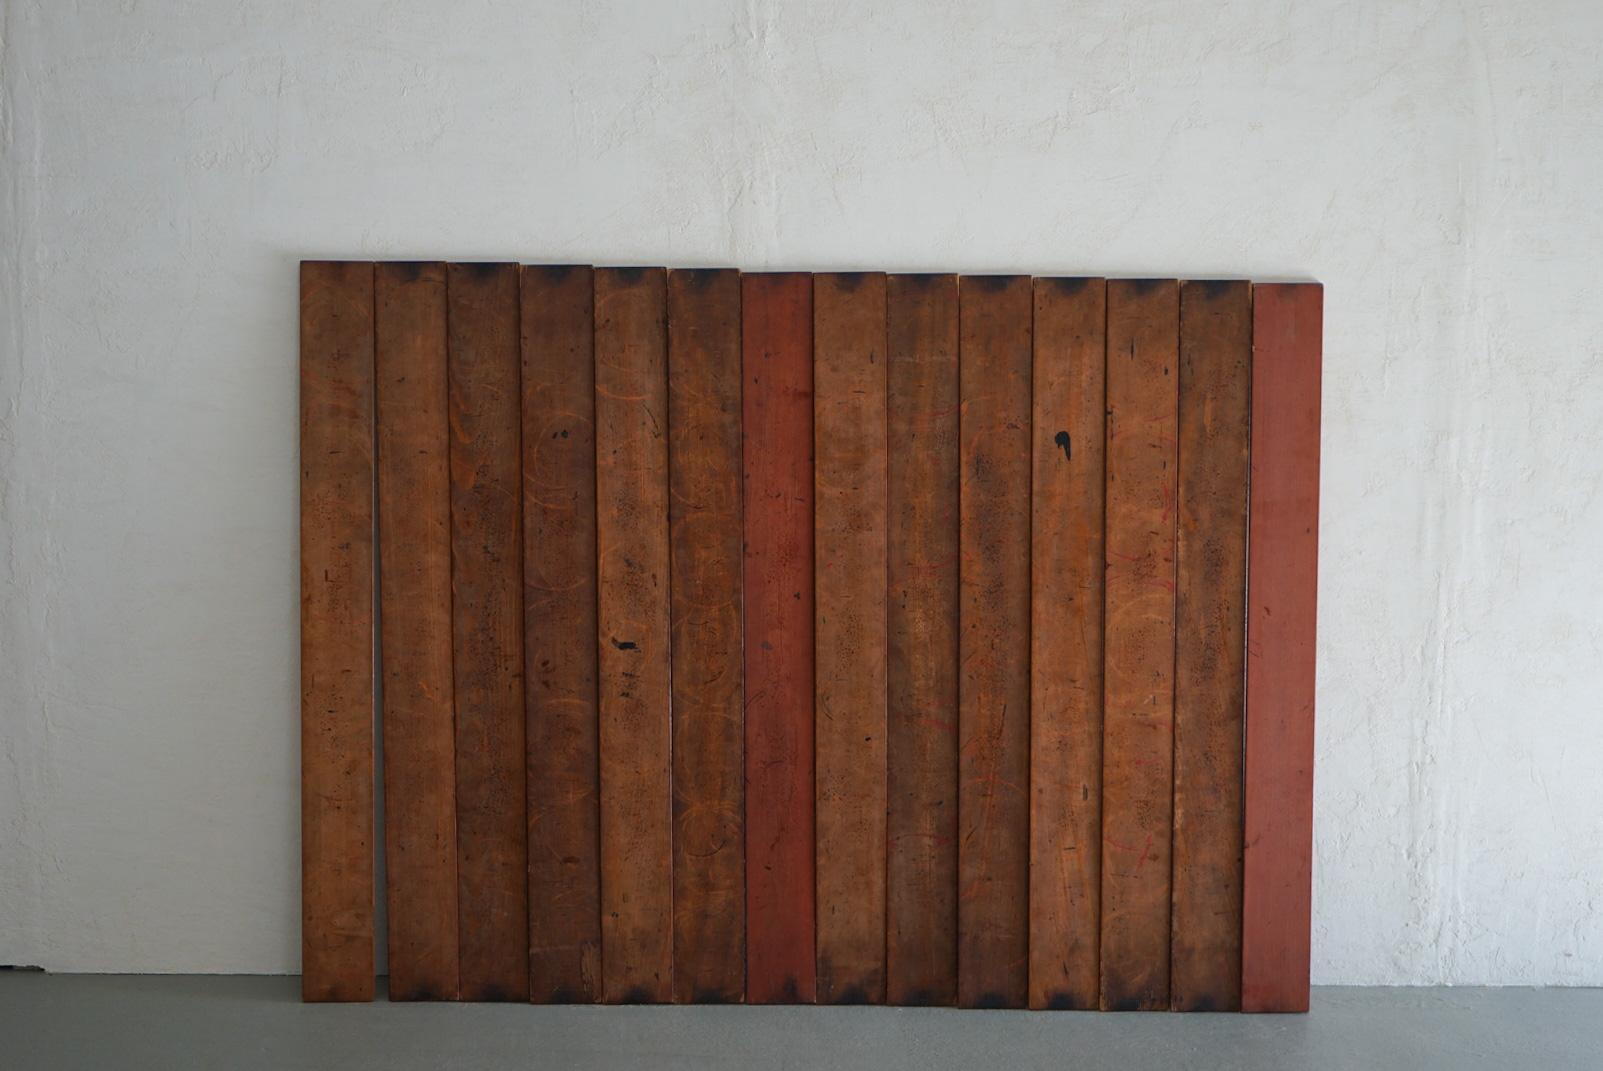 Il s'agit d'une ancienne planche de travail japonaise.
Cette planche est utilisée par les artisans laqueurs pour sécher leurs bols après l'application de la laque.
Il y a donc d'innombrables traces de laque.
Il s'agit d'une beauté accidentelle créée